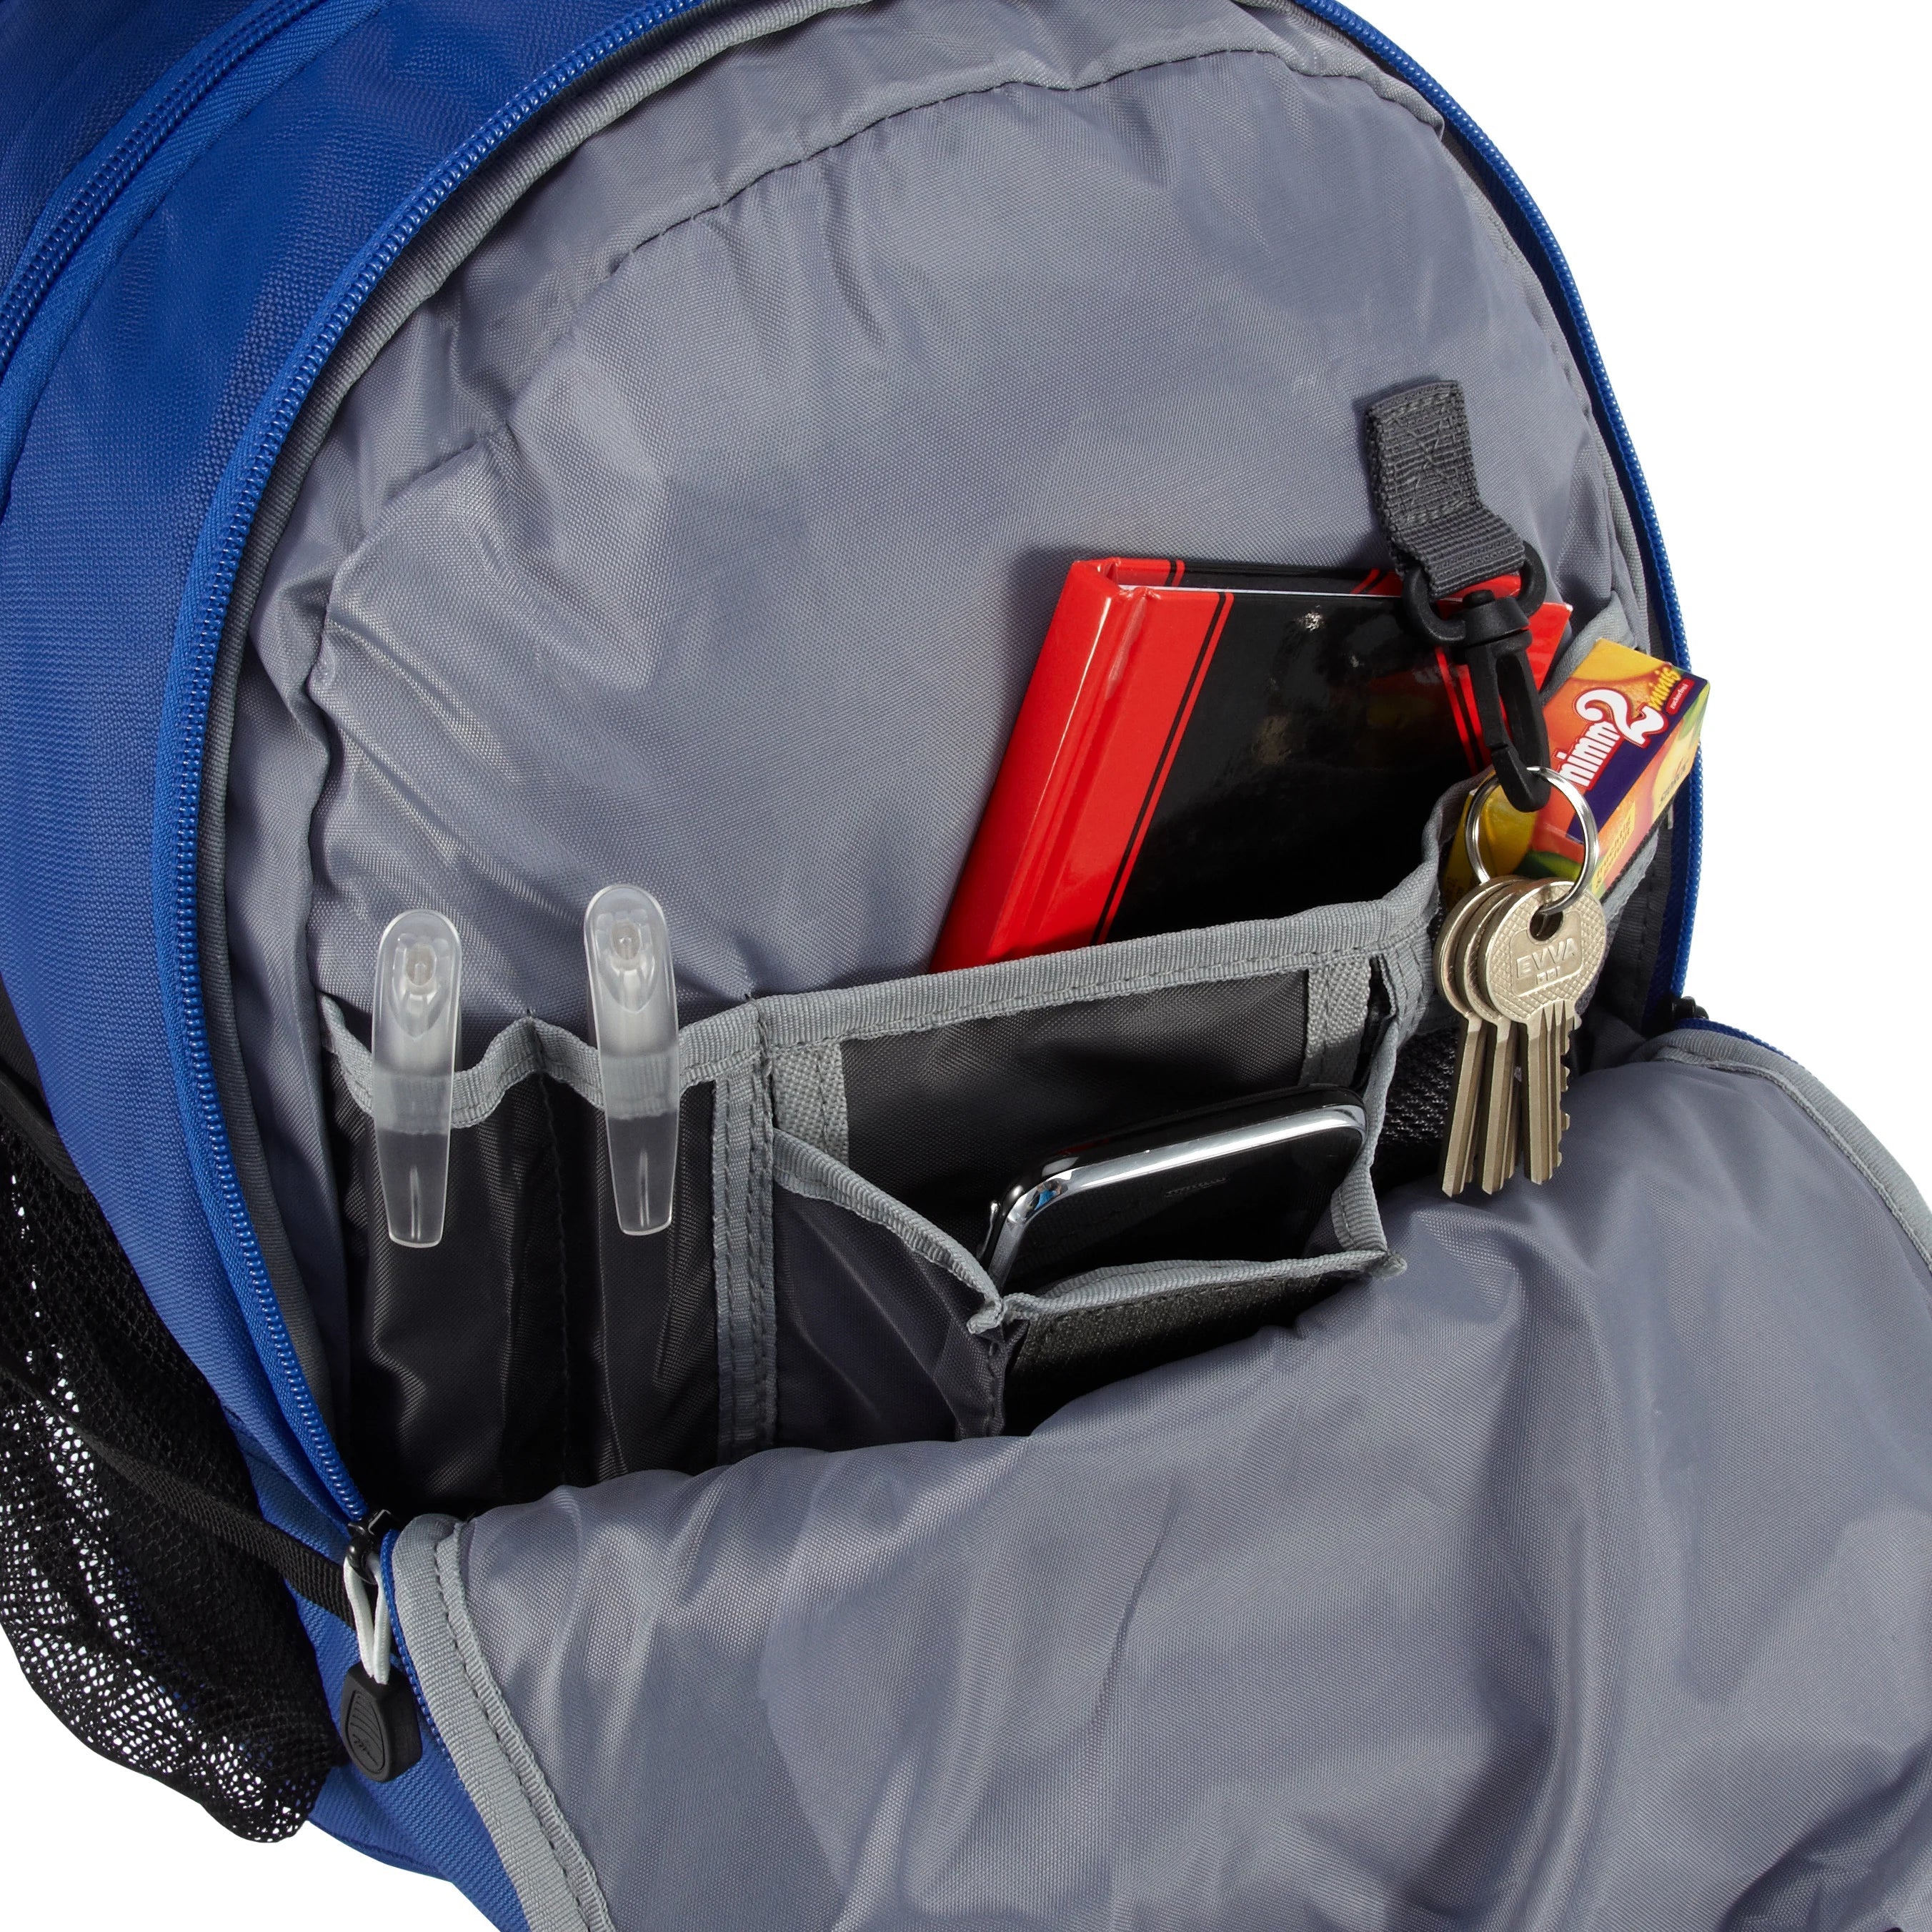 High Sierra School Backpacks sac à dos avec compartiment pour ordinateur portable Aggro 49 cm - cramoisi/noir/argent